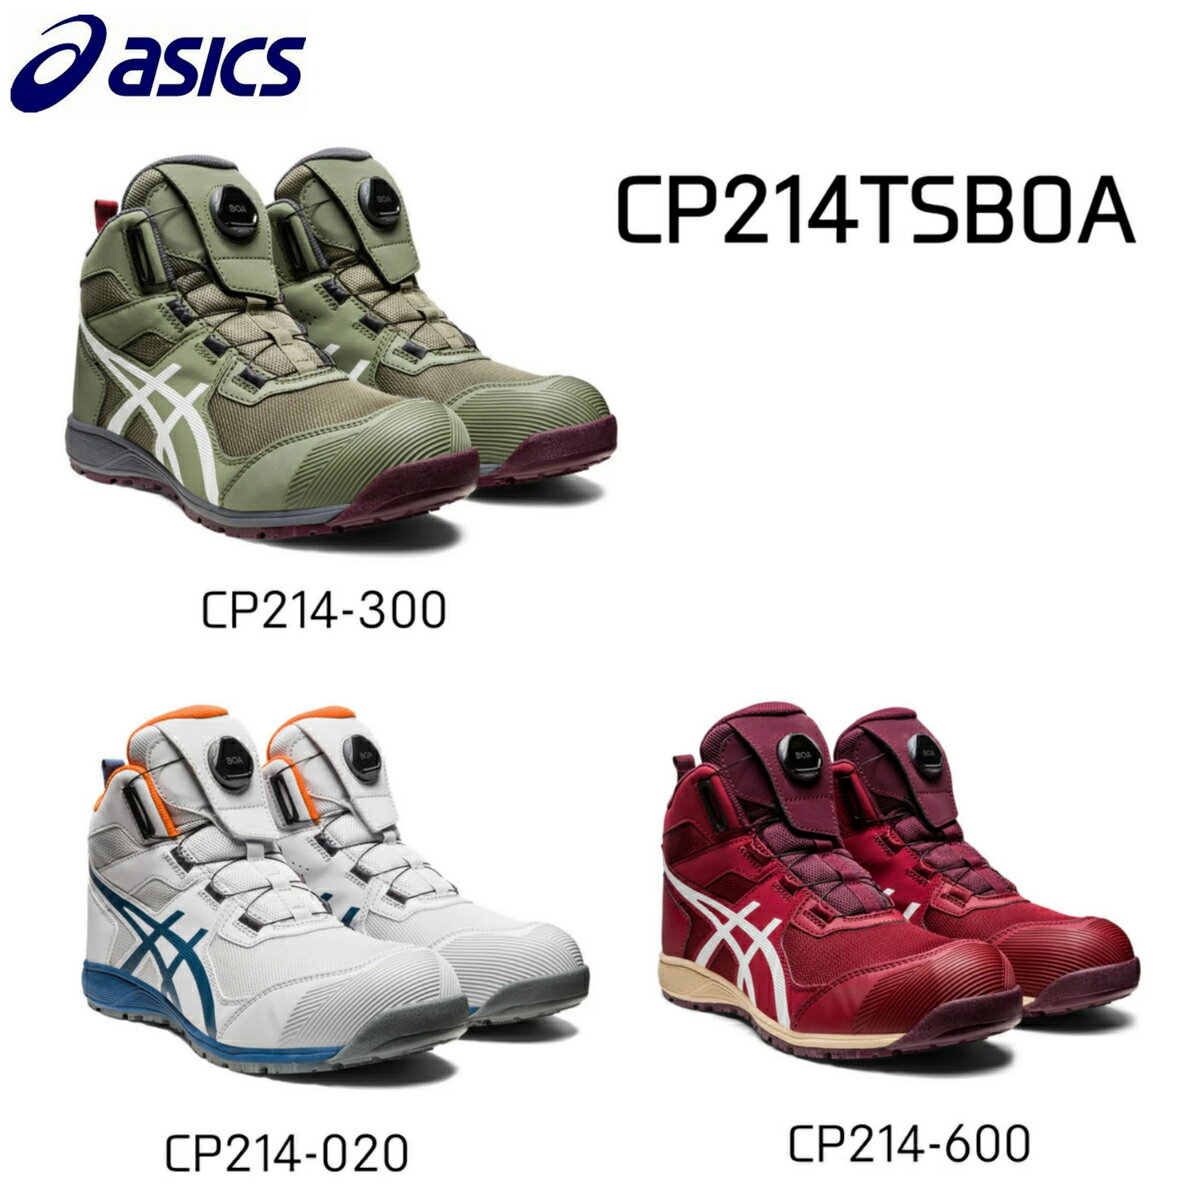 アシックス安全靴 ハイカット作業靴 2E ダイヤル式 boaCP214 TS BOA300.ライケングリーンアシックス 安全靴 作業靴020. グラシアグレー600.ビートジュースボア BOA メッシュ 2E